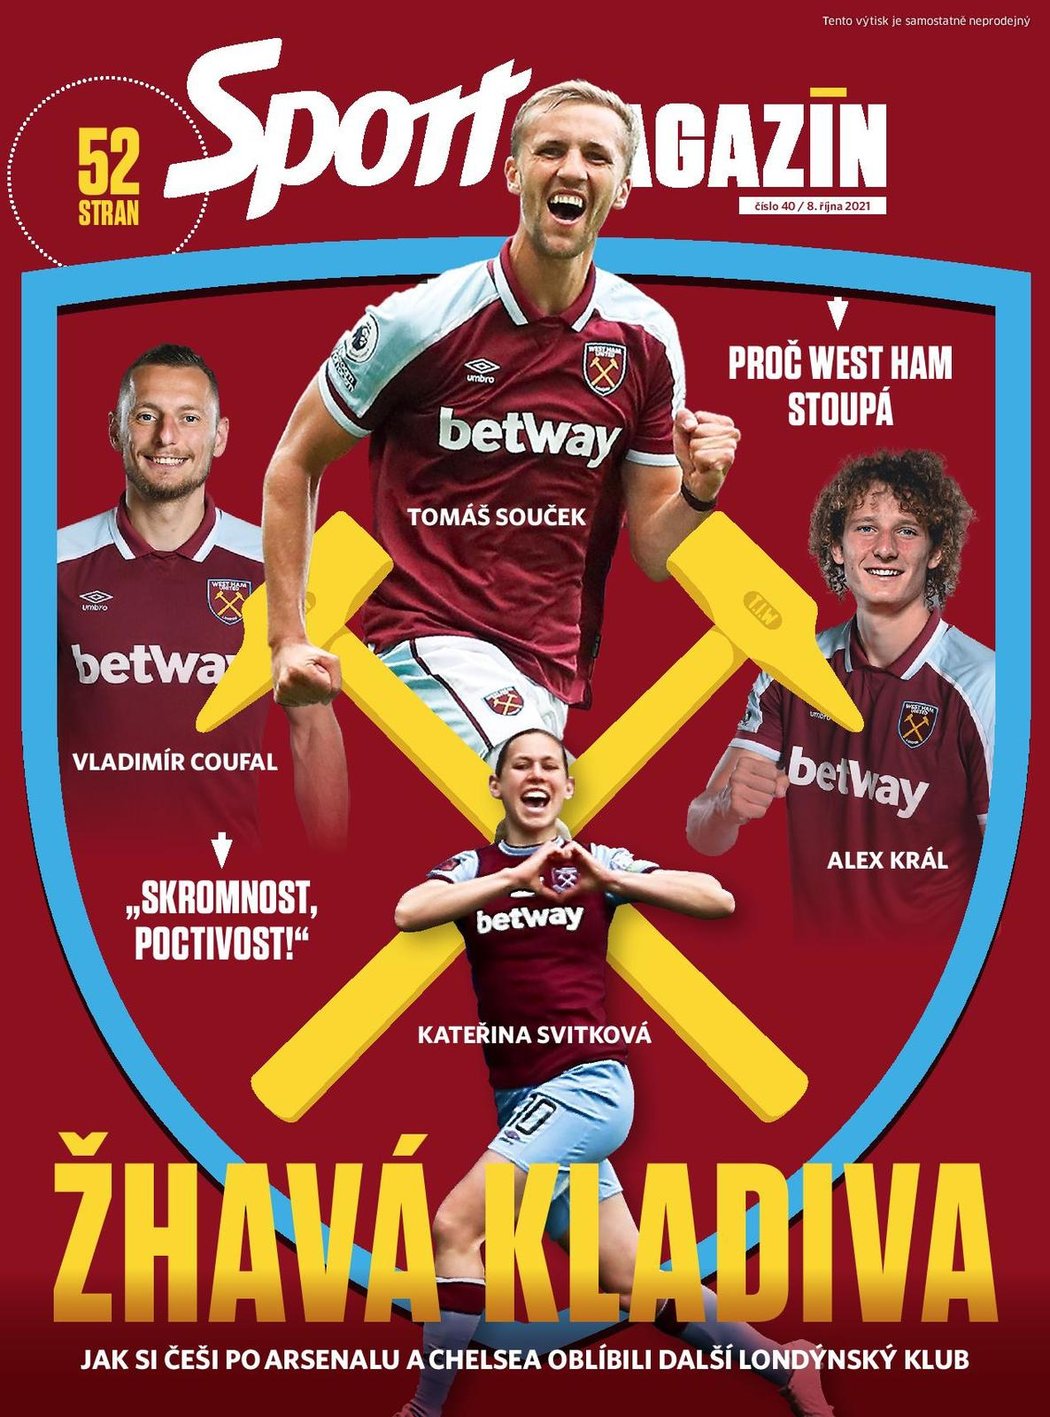 Páteční Sport Magazín přináší velké téma o West Hamu včetně rozhovoru s Luďkem Mikloškem